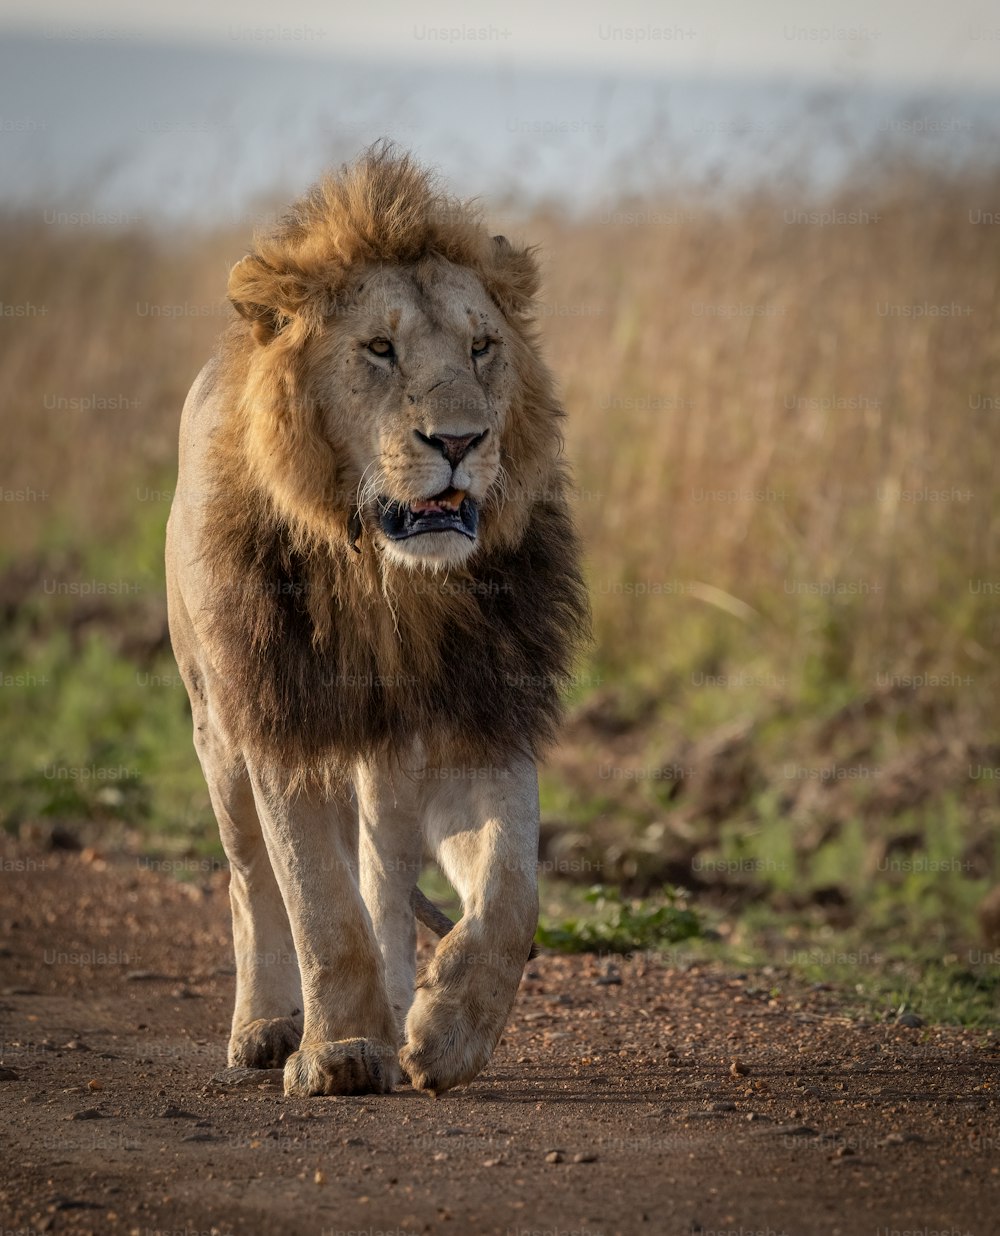 Ein Löwenporträt in der Massai Mara, Afrika